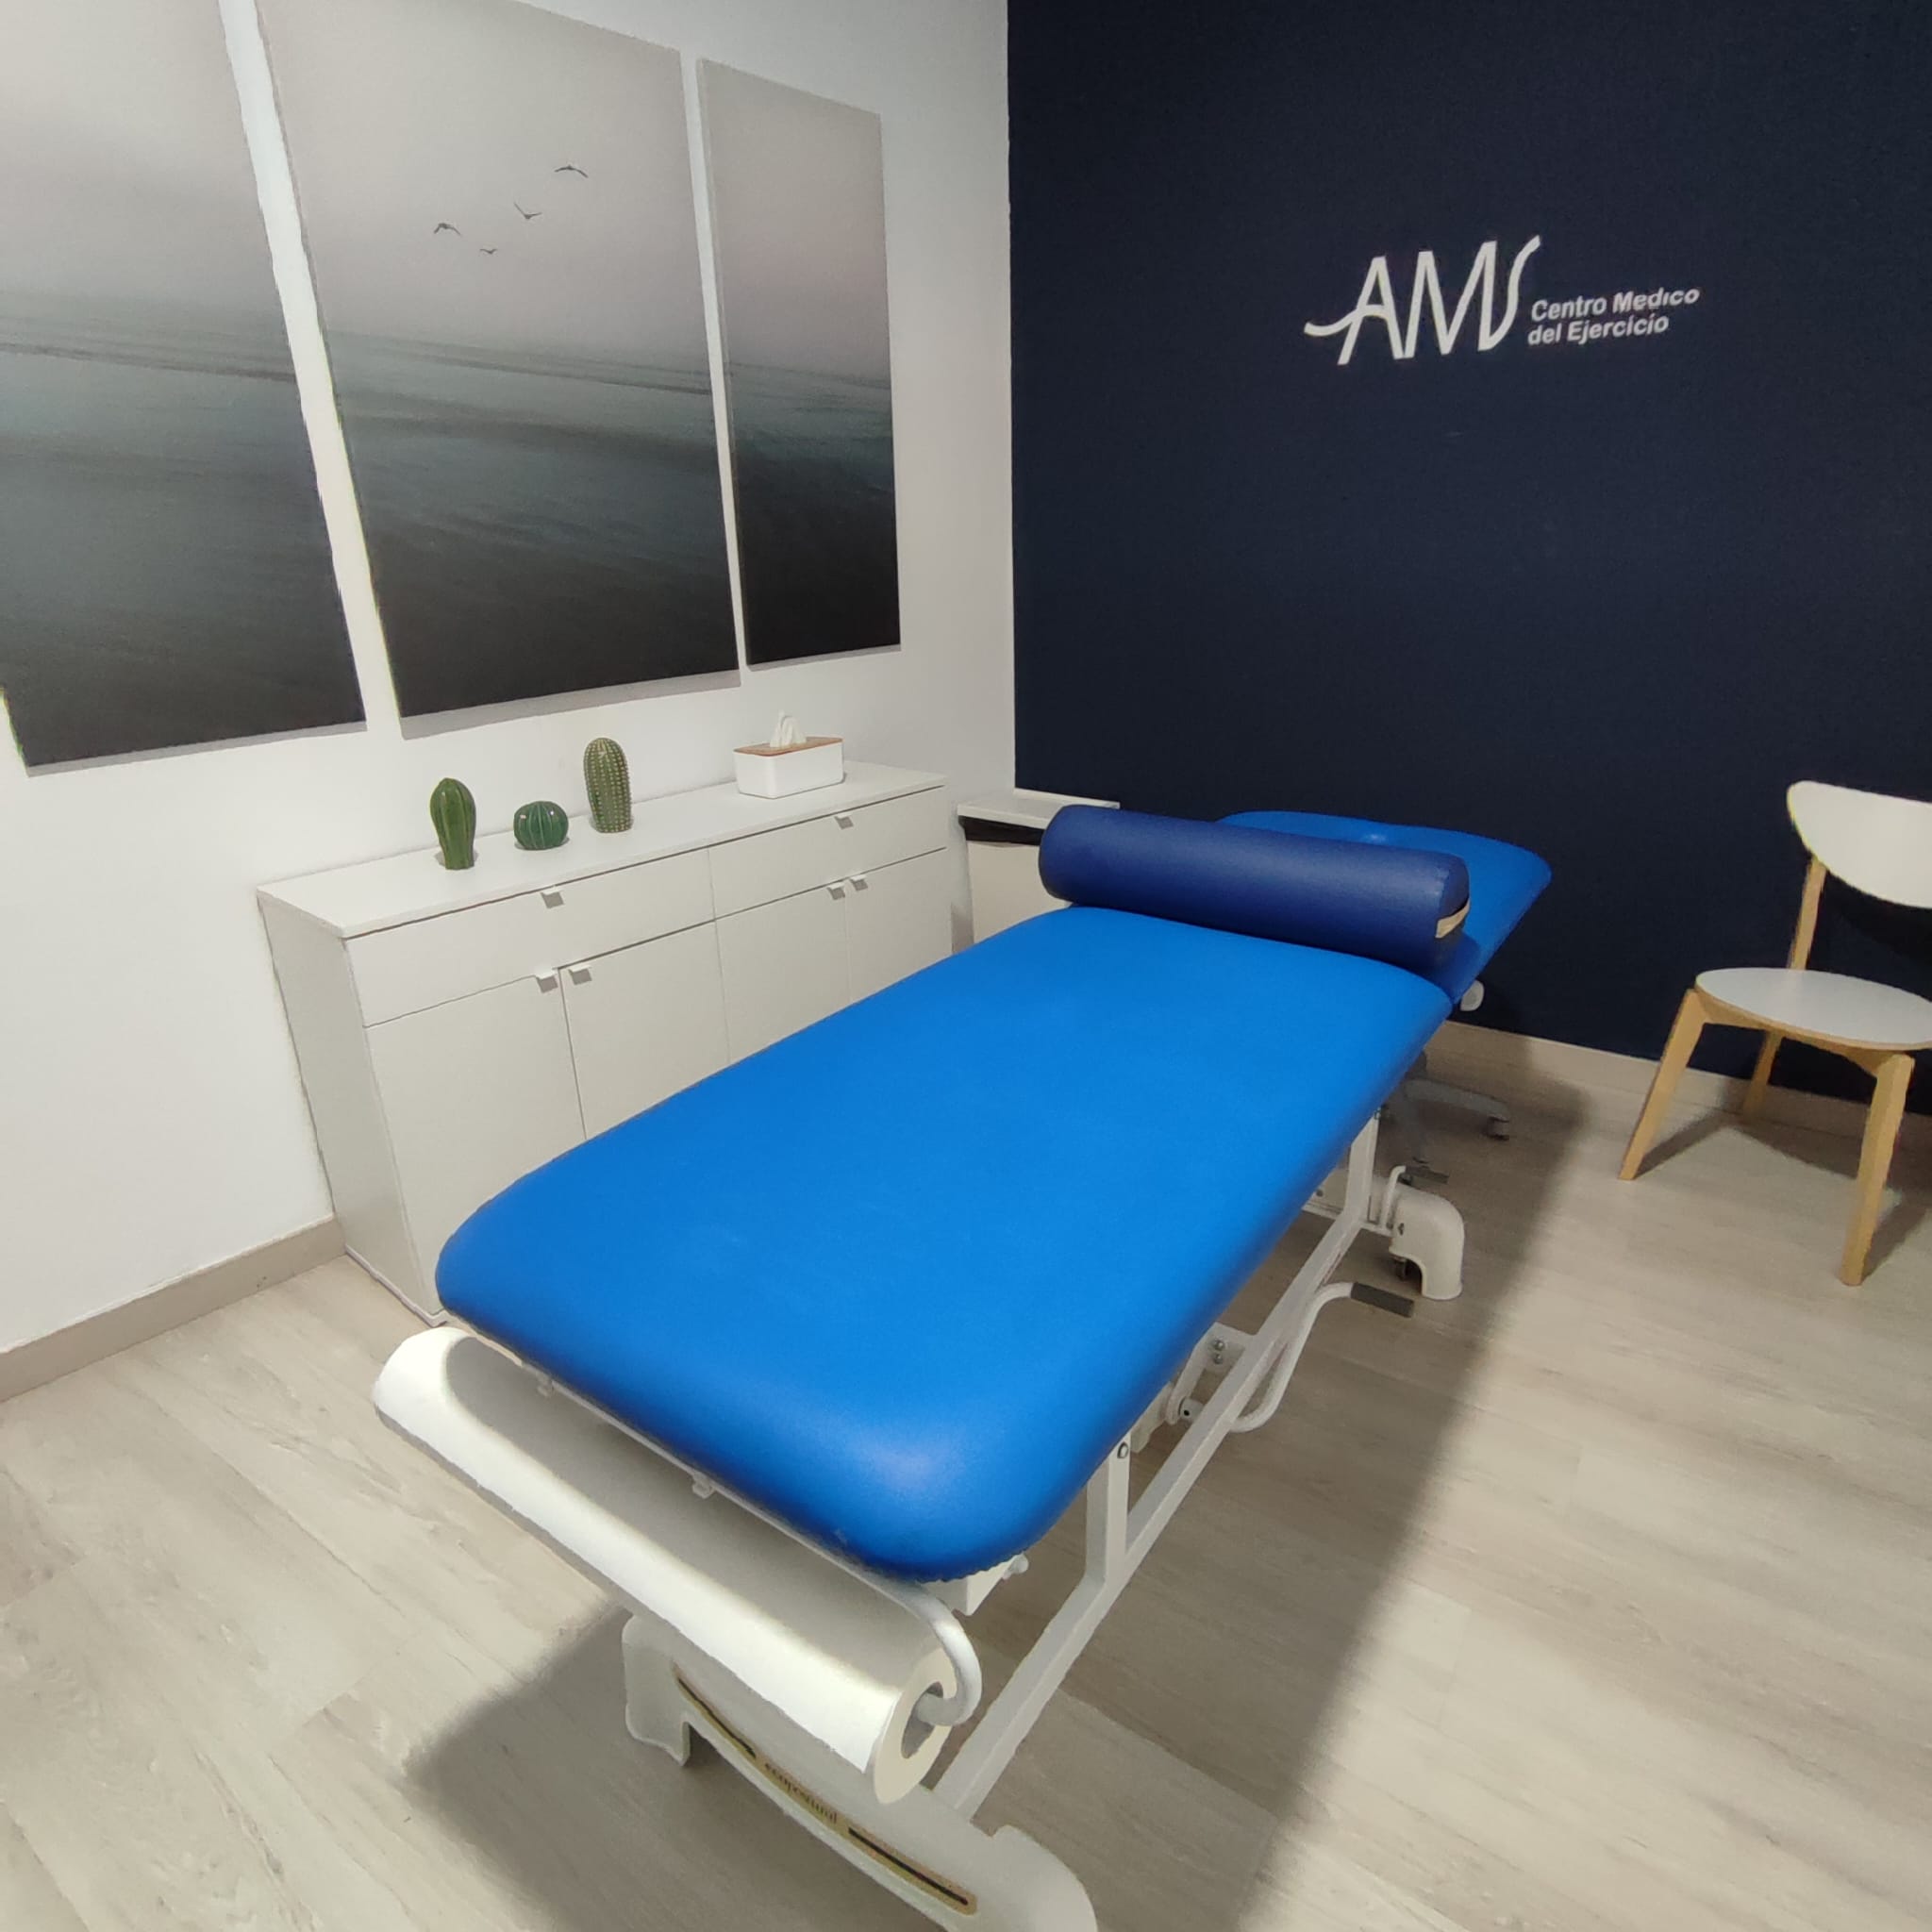 Sala privada de fisioterapia Marbella en AMS Centro Medico del Ejercicio para en tratamiento individualizado de los pacientes.